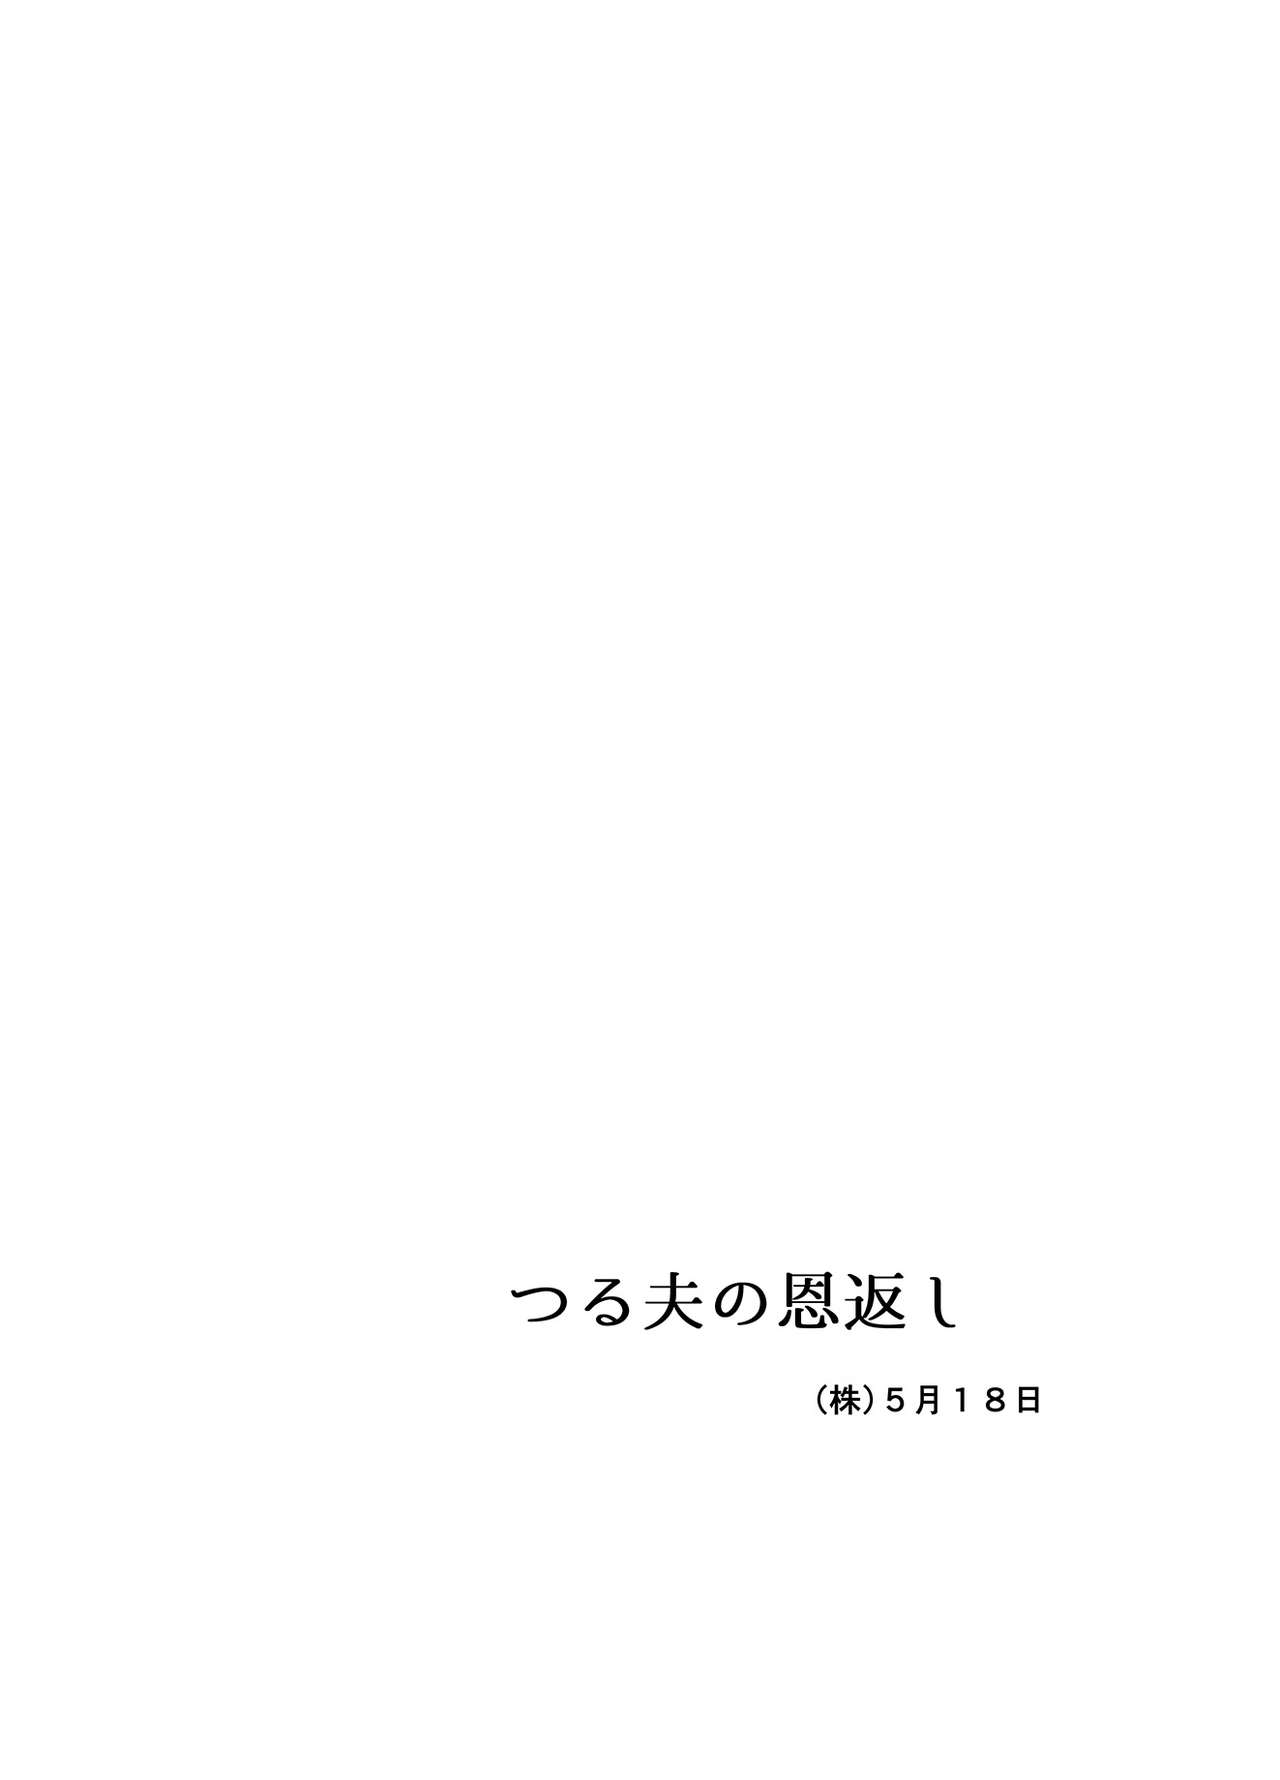 [Ochaocha Honpo (Chabashira Tatsukichi)] Tsuru Otto no Ongaeshi [Digital] page 48 full